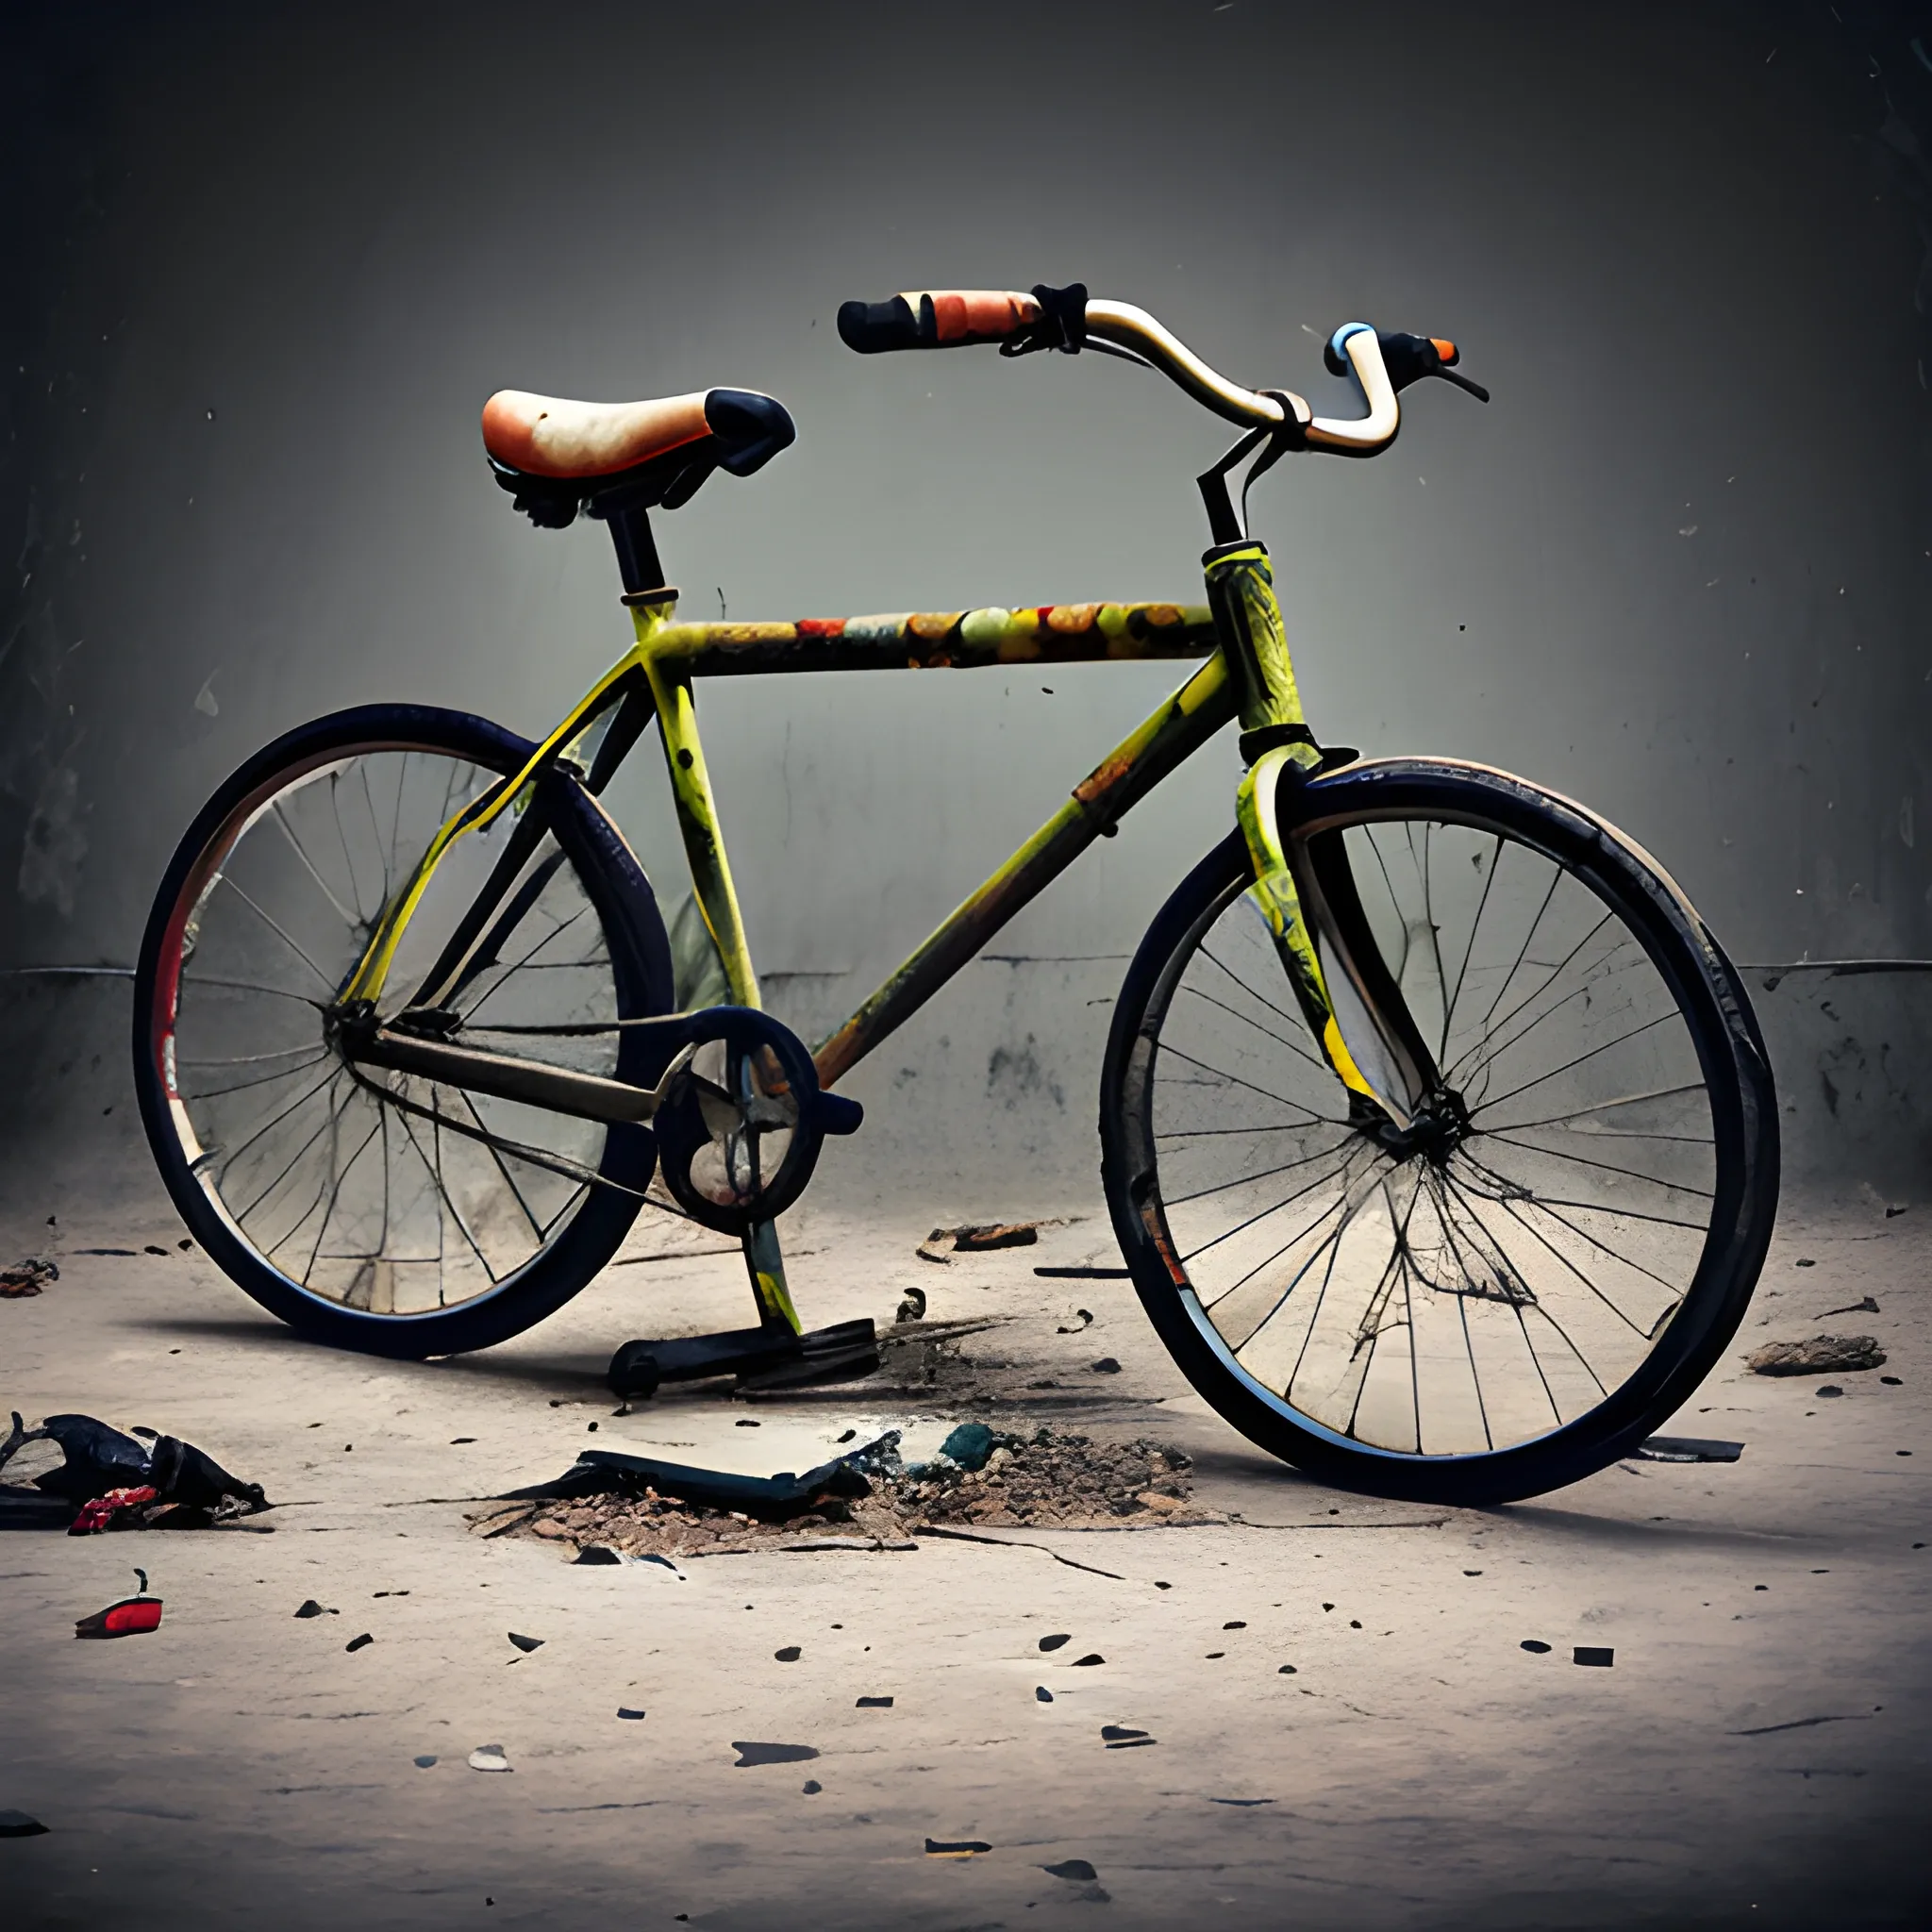 bicycle demolished, photography